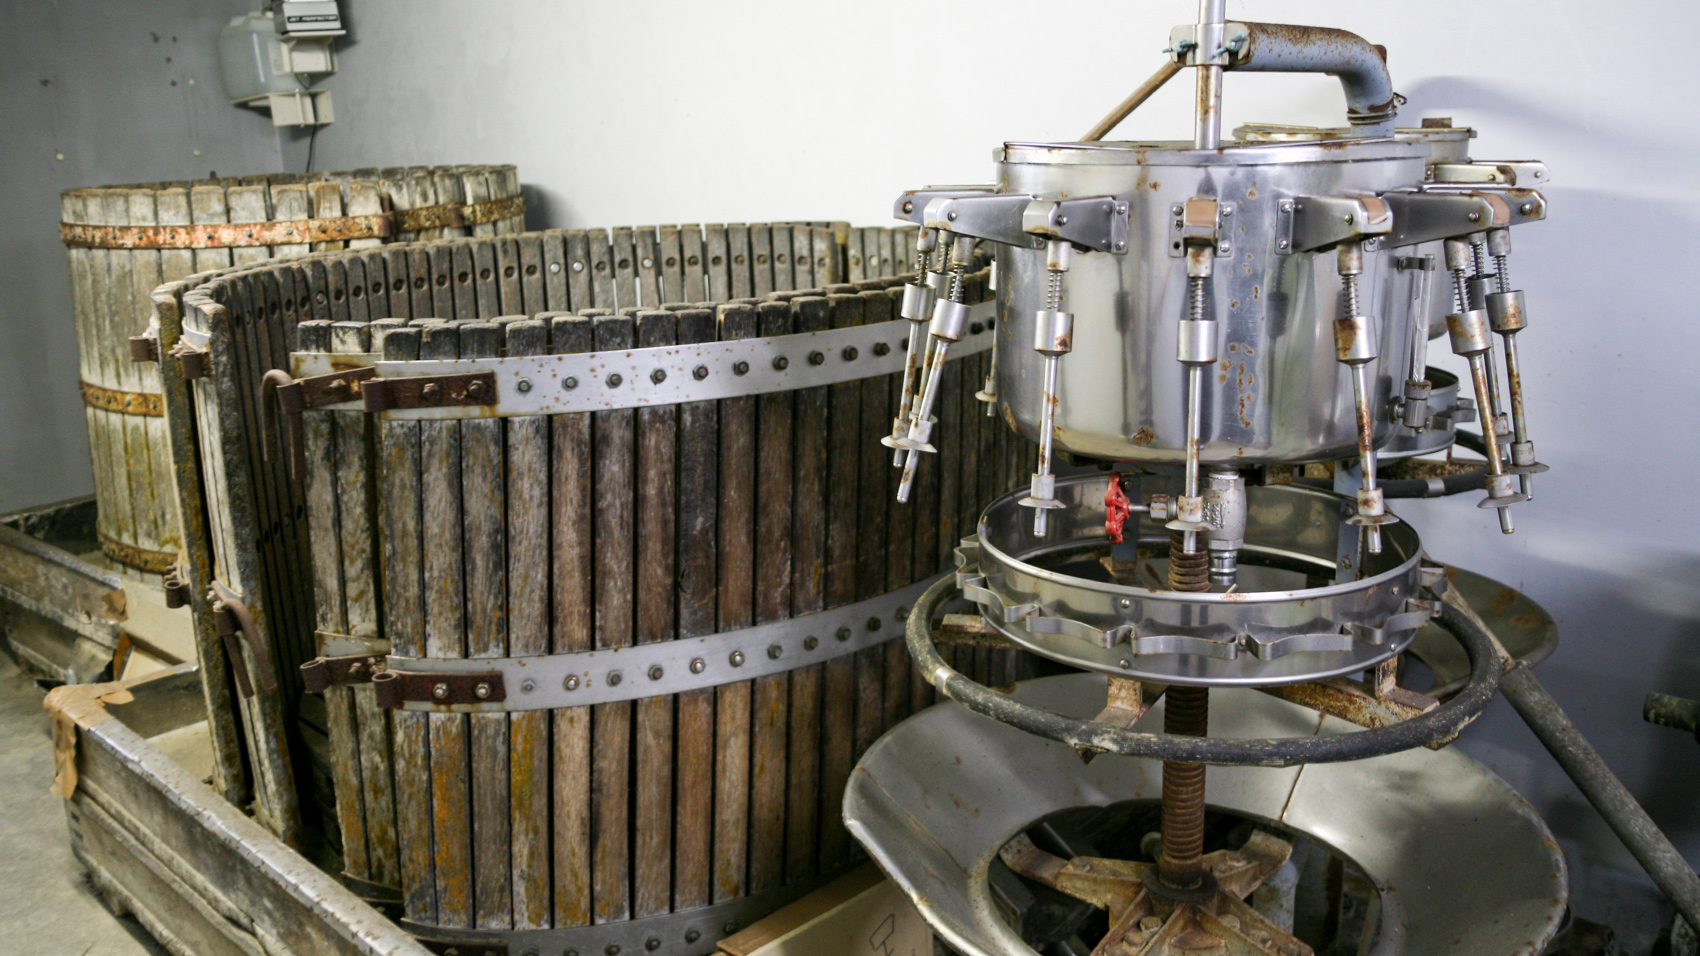 かつて井筒ワインで実際に使用されていたワイン醸造や瓶詰めのための道具。今も大切に保管されている。